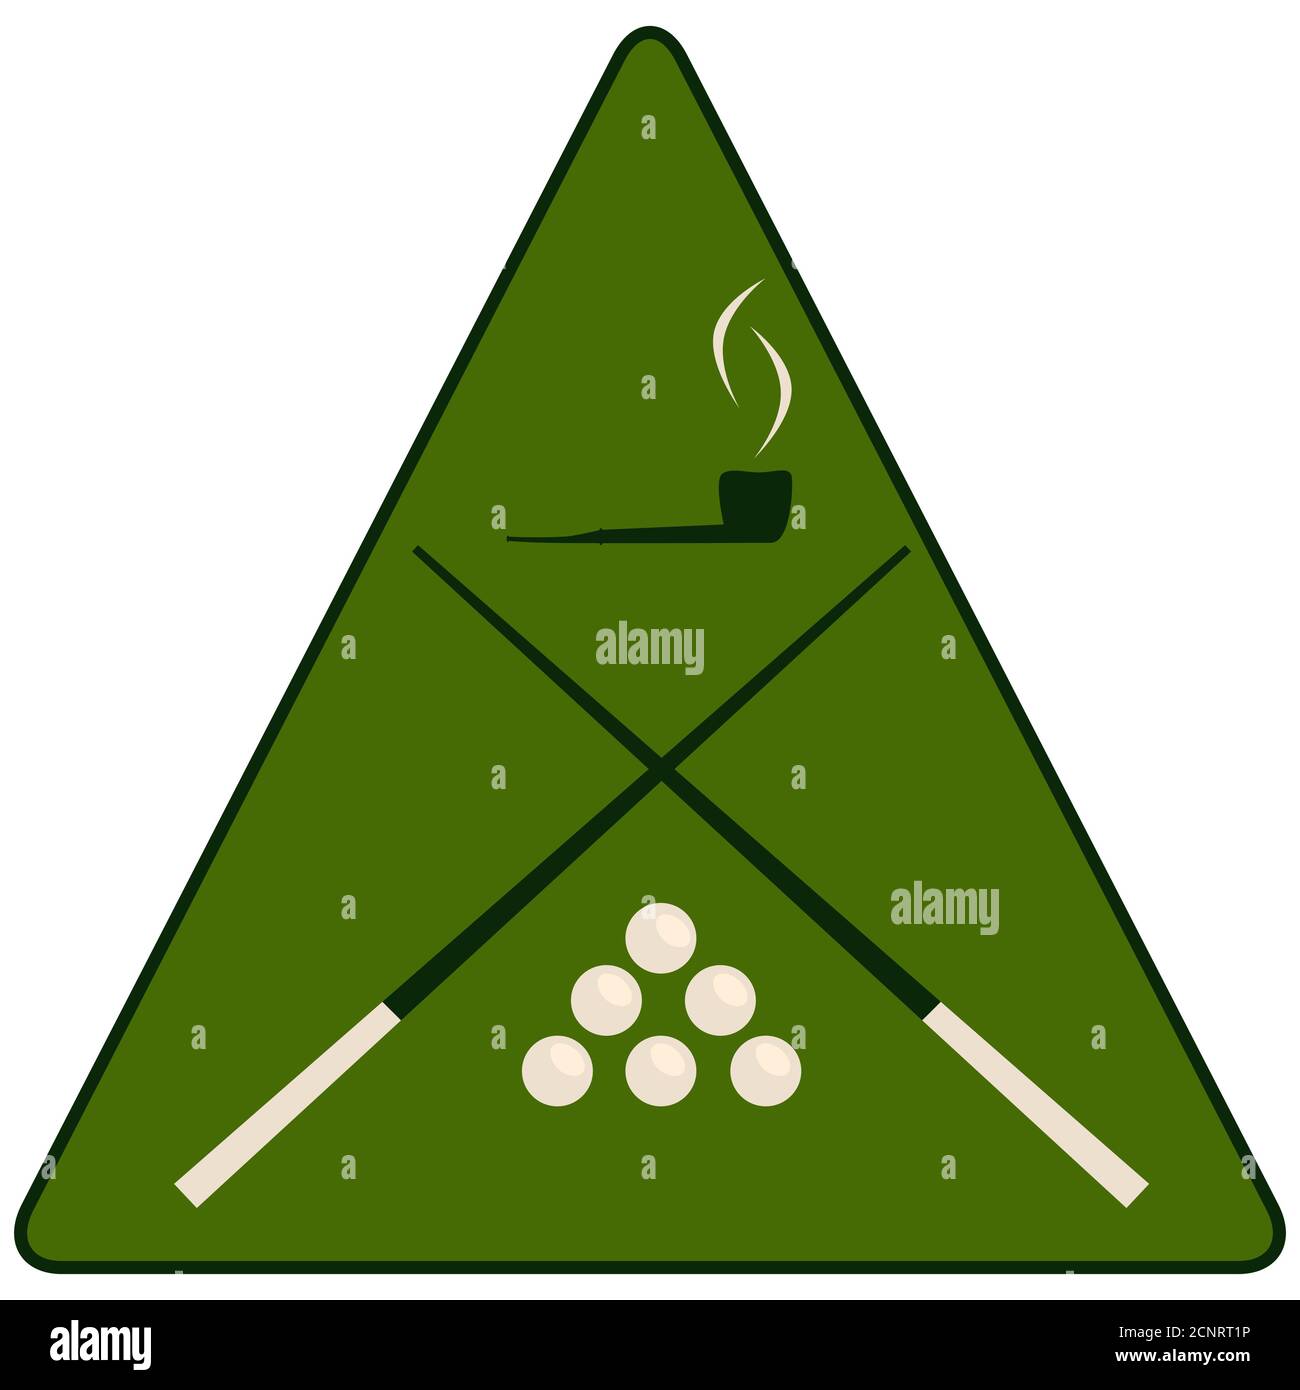 Billiard cue, pool balls and pipe in green triangle. Billiard badge design. Vector illustration Stock Vector